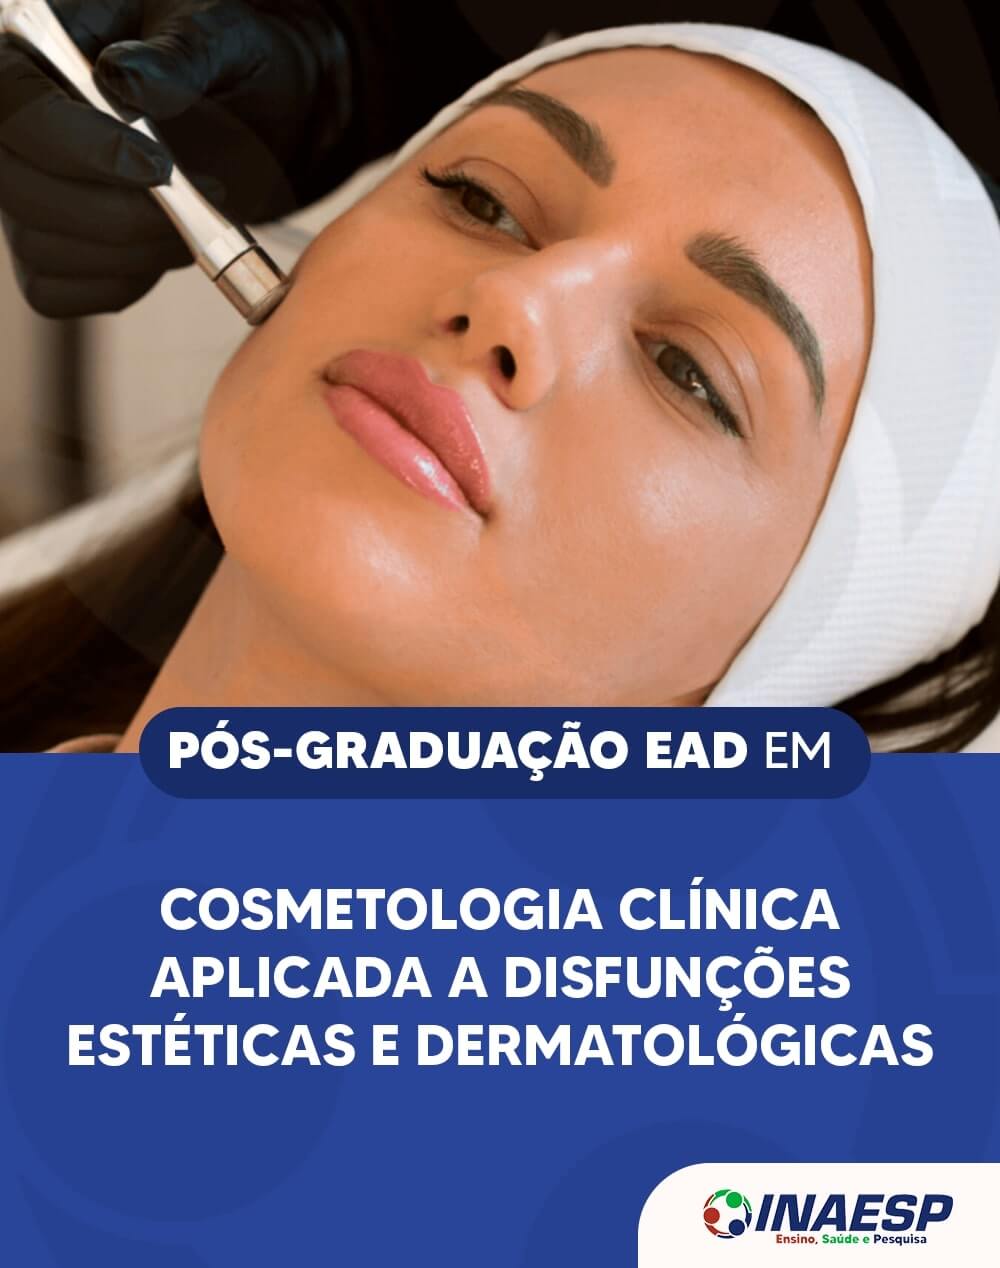 Pós-Graduação EAD em Cosmetologia Clínica Aplicada a Disfunções Estéticas e  Dermatológicas – Instituto Nacional de Ensino, Pesquisa e Saúde - INAESP